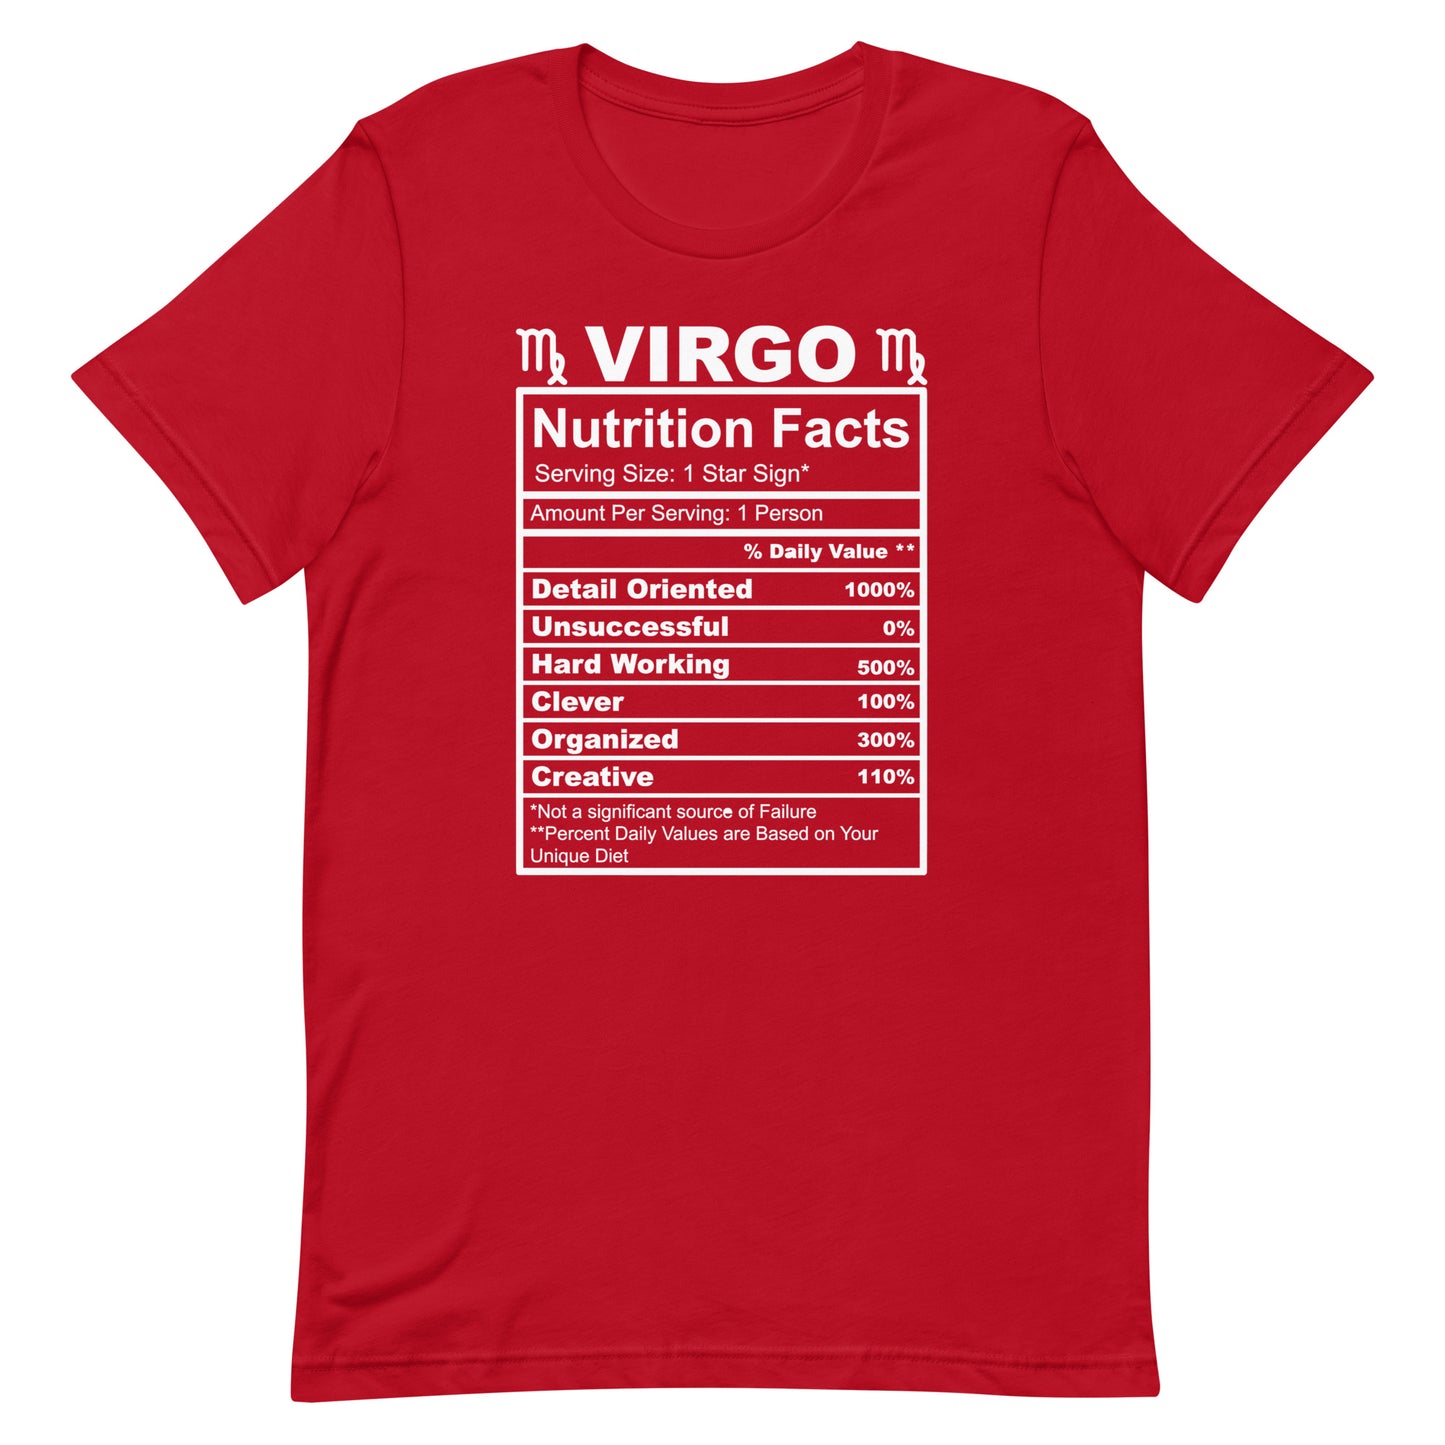 VIRGO - L-XL - Unisex T-Shirt (white letters)